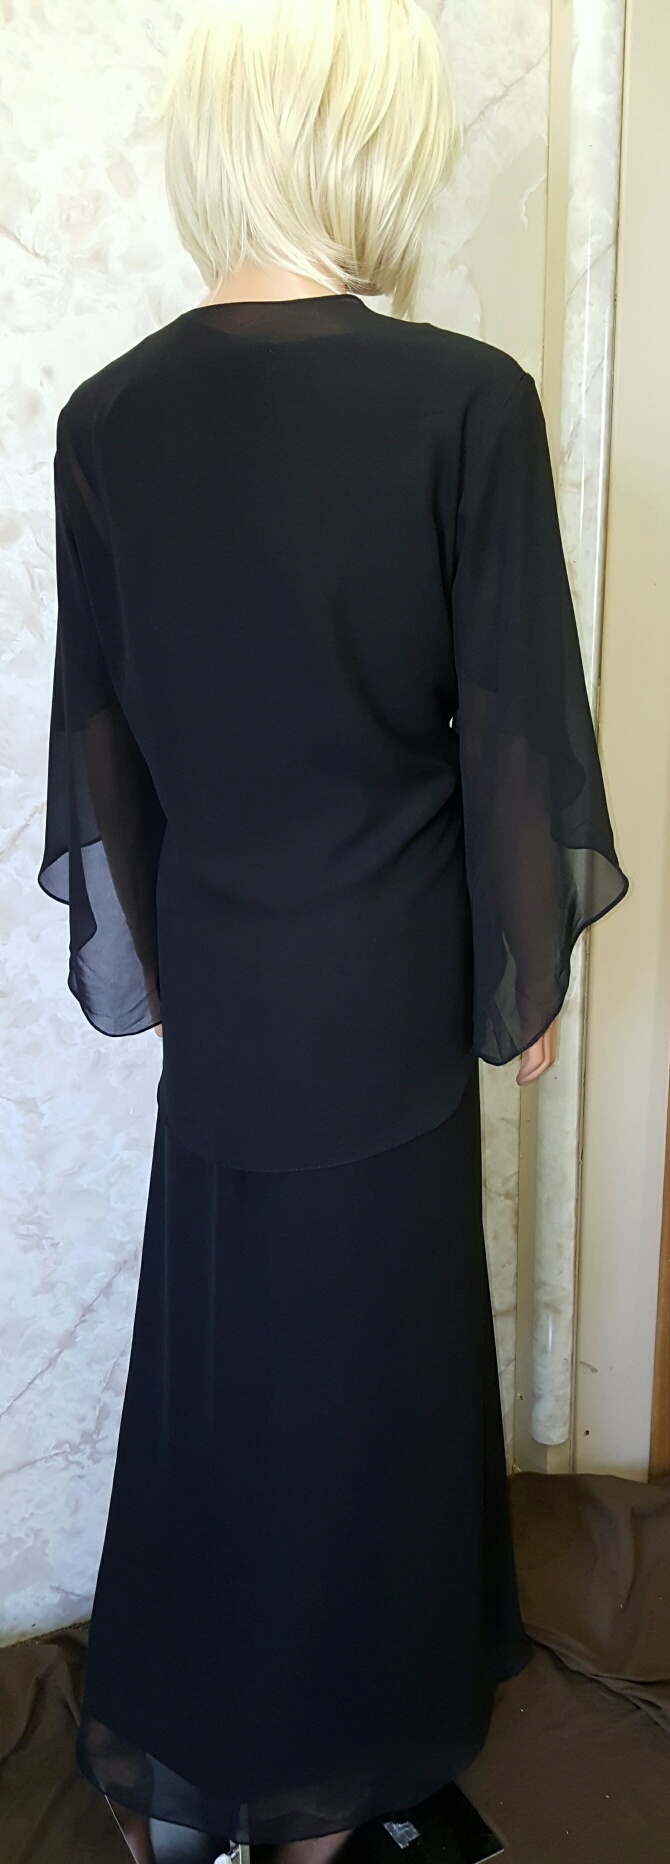 black chiffon mothers dress and jacket